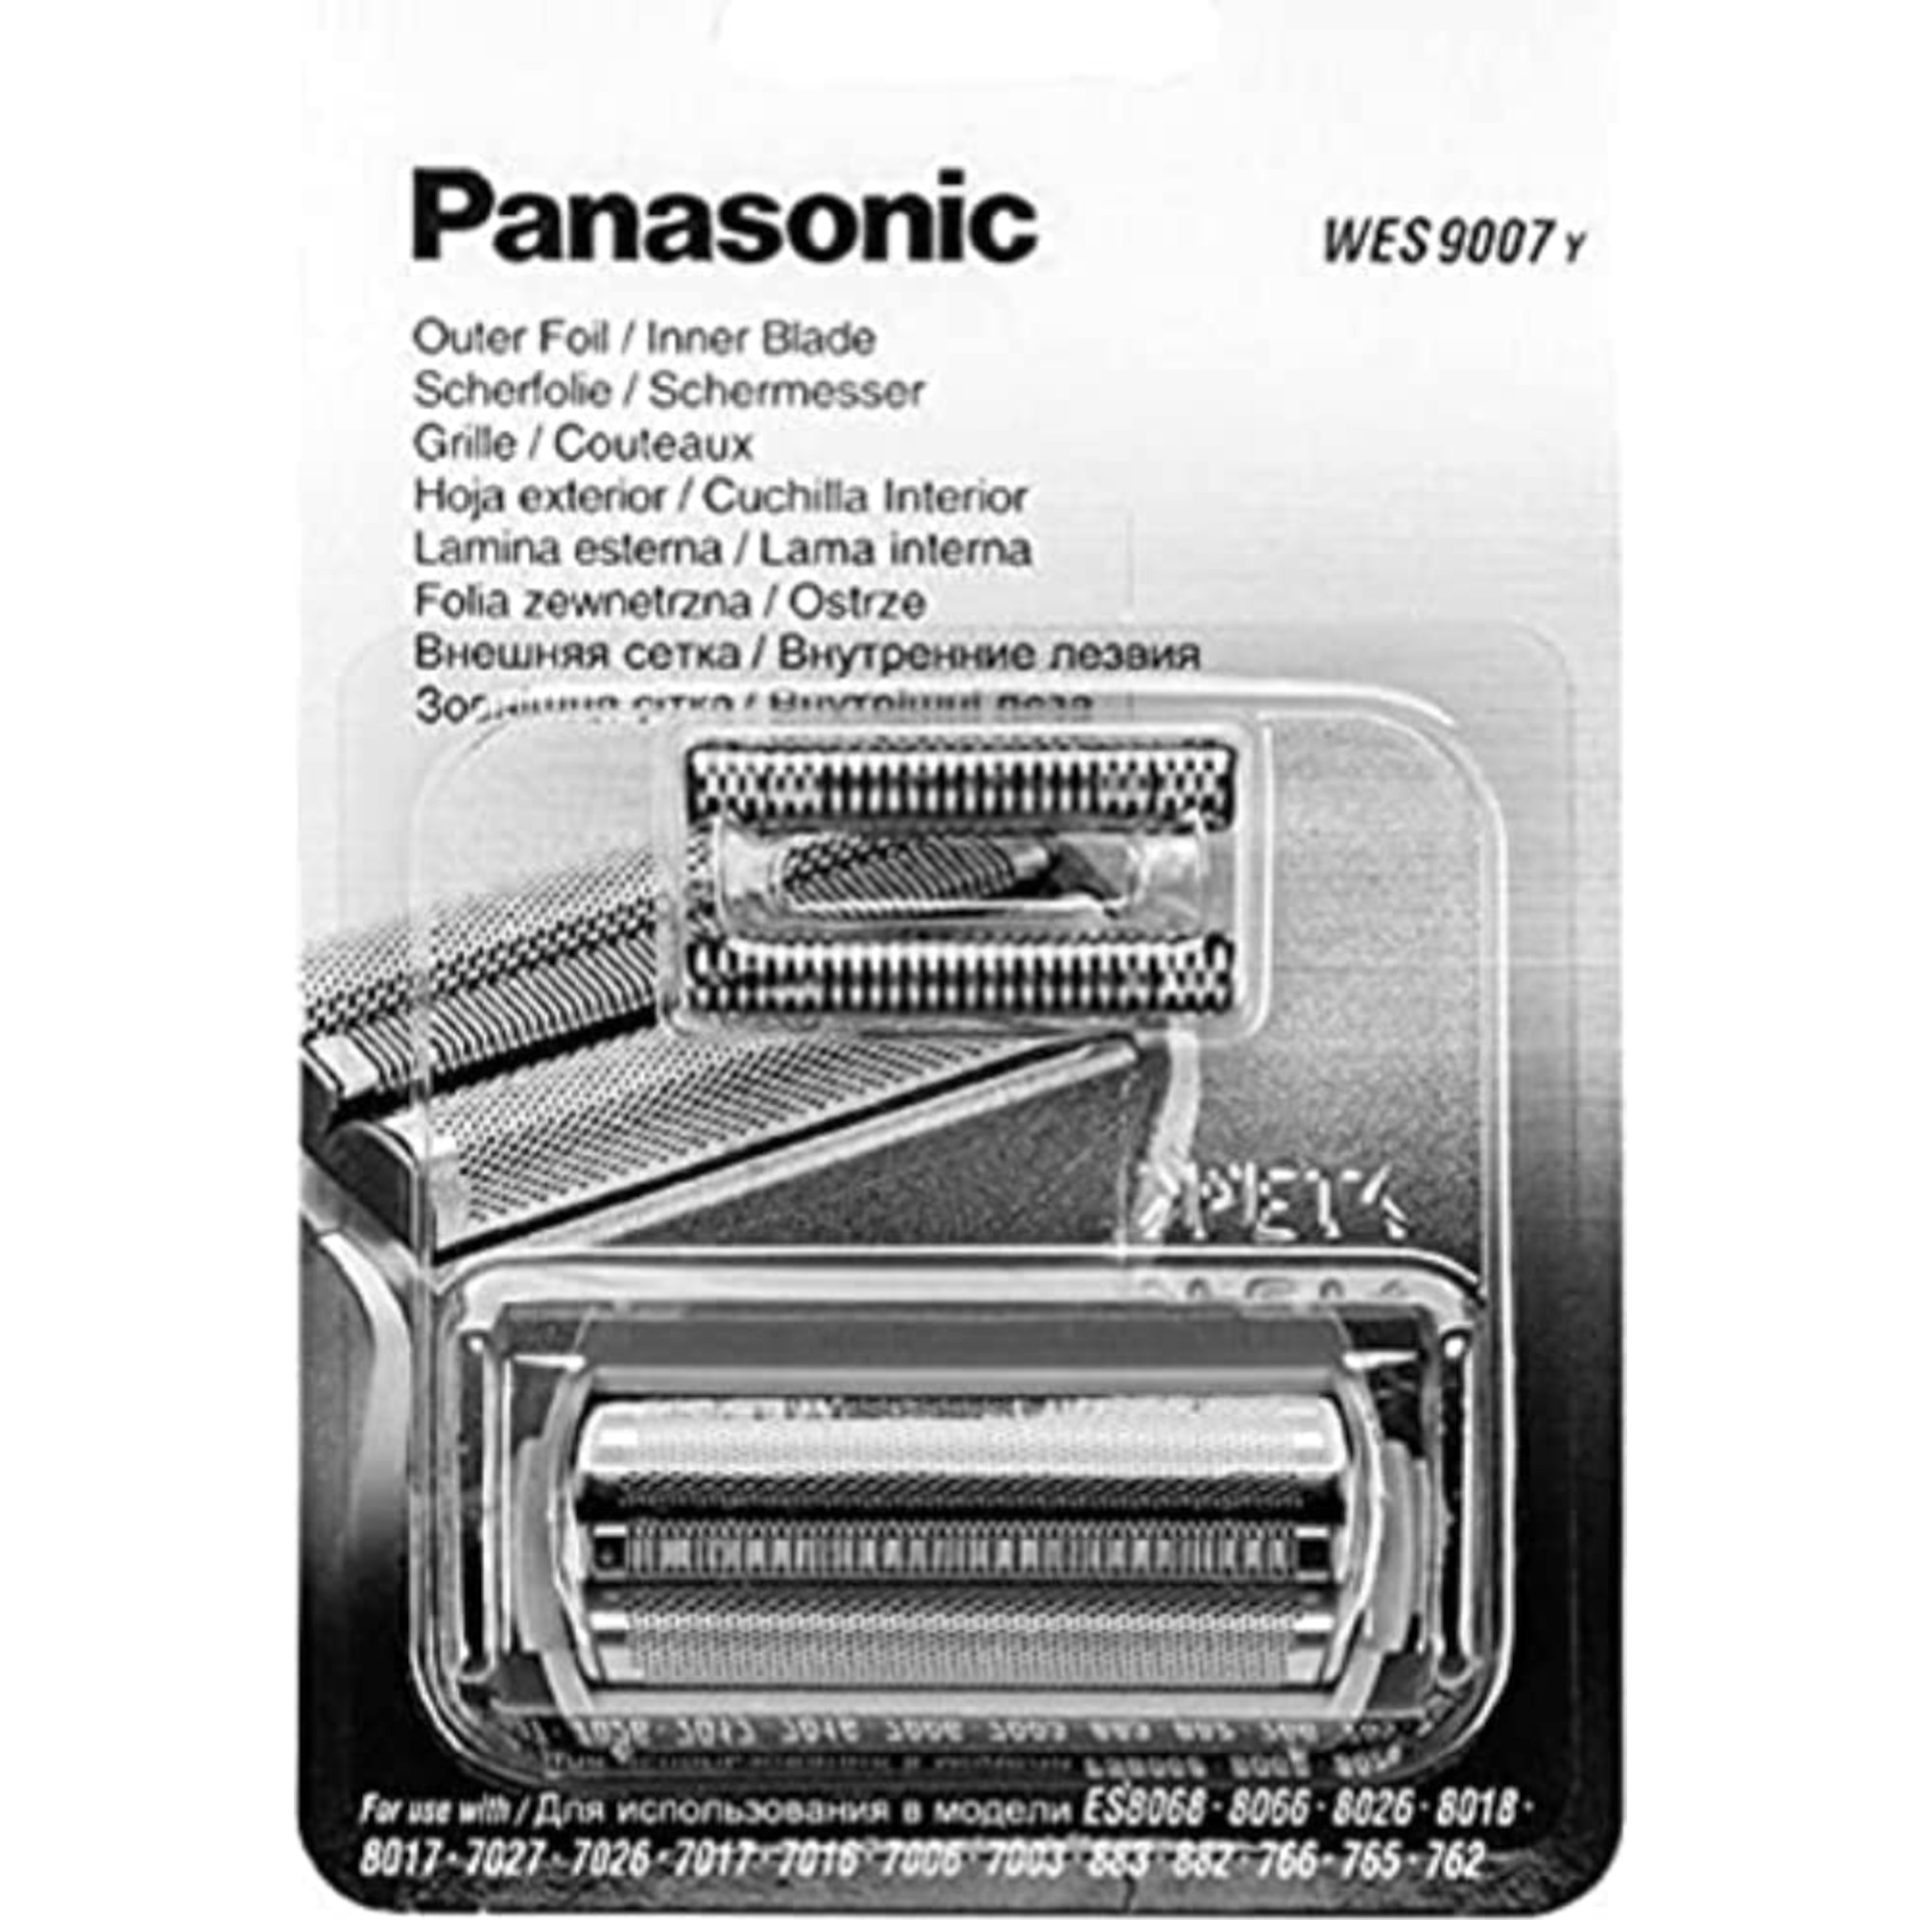 Zdjęcia - Akcesoria do golarek elektrycznych Panasonic WES9007 zamienna folia zewnętrzna i ostrze do golarki (do modeli 